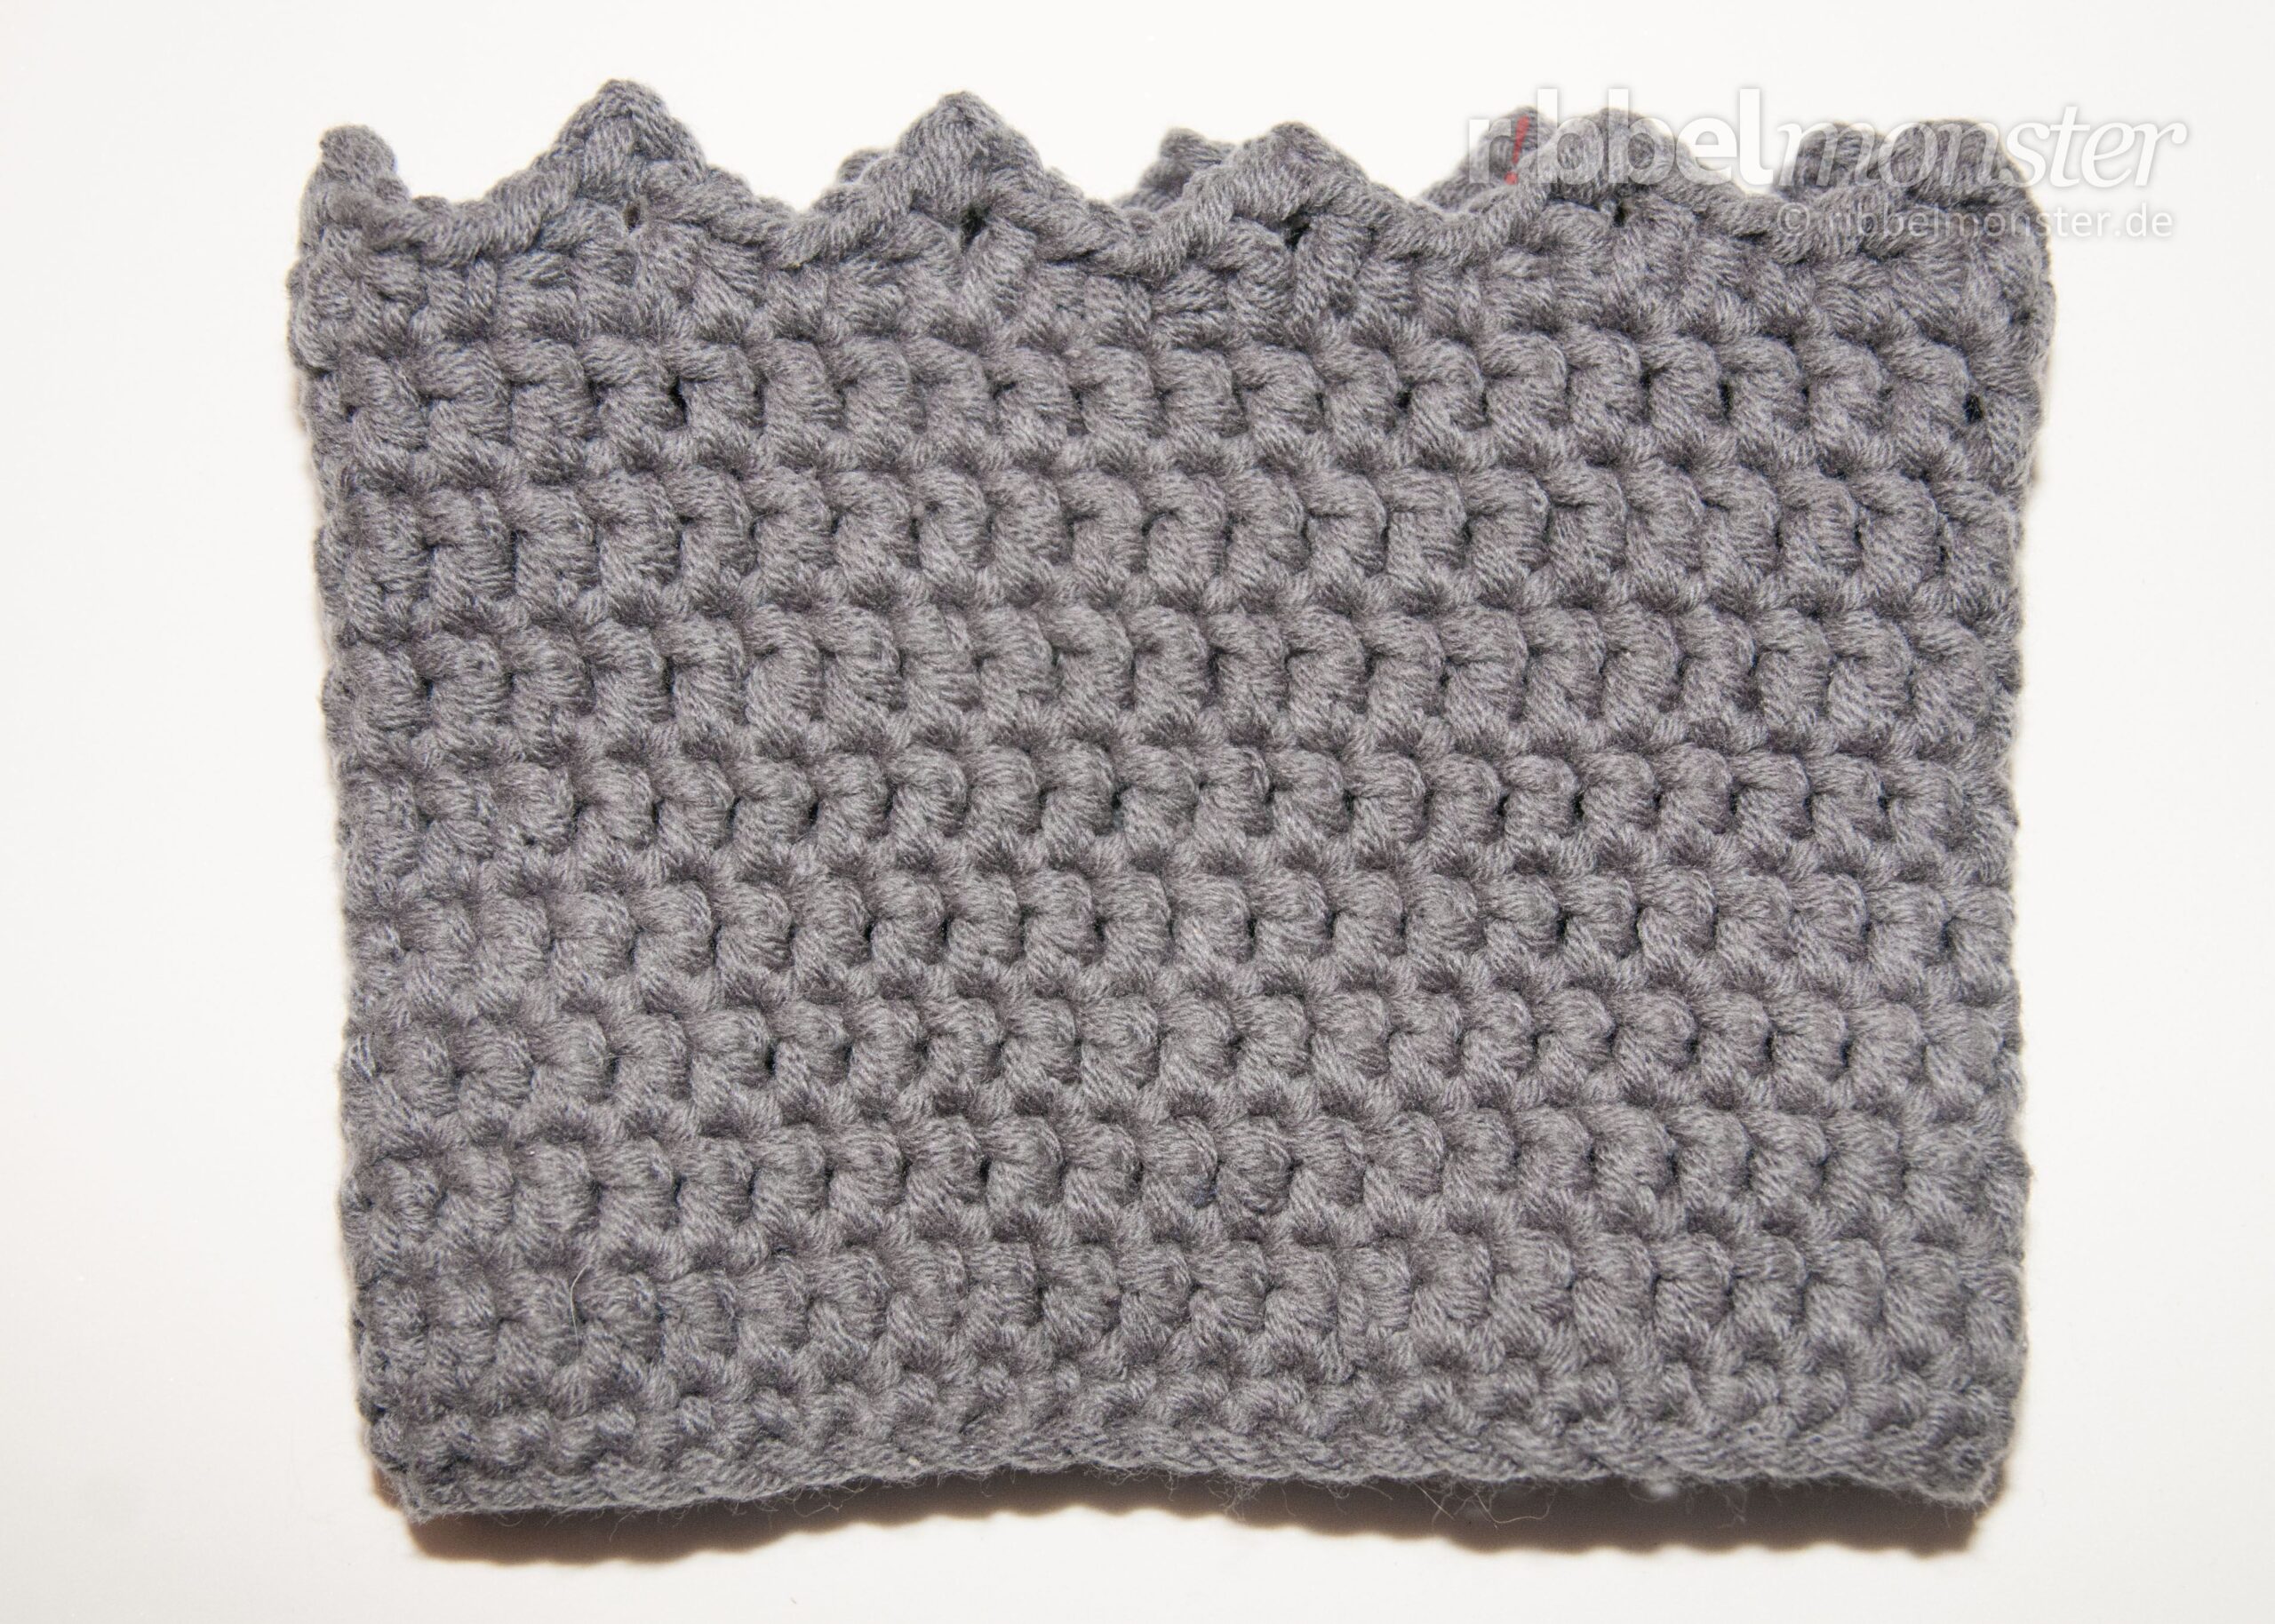 Crochet Boot Cuffs “Crown”